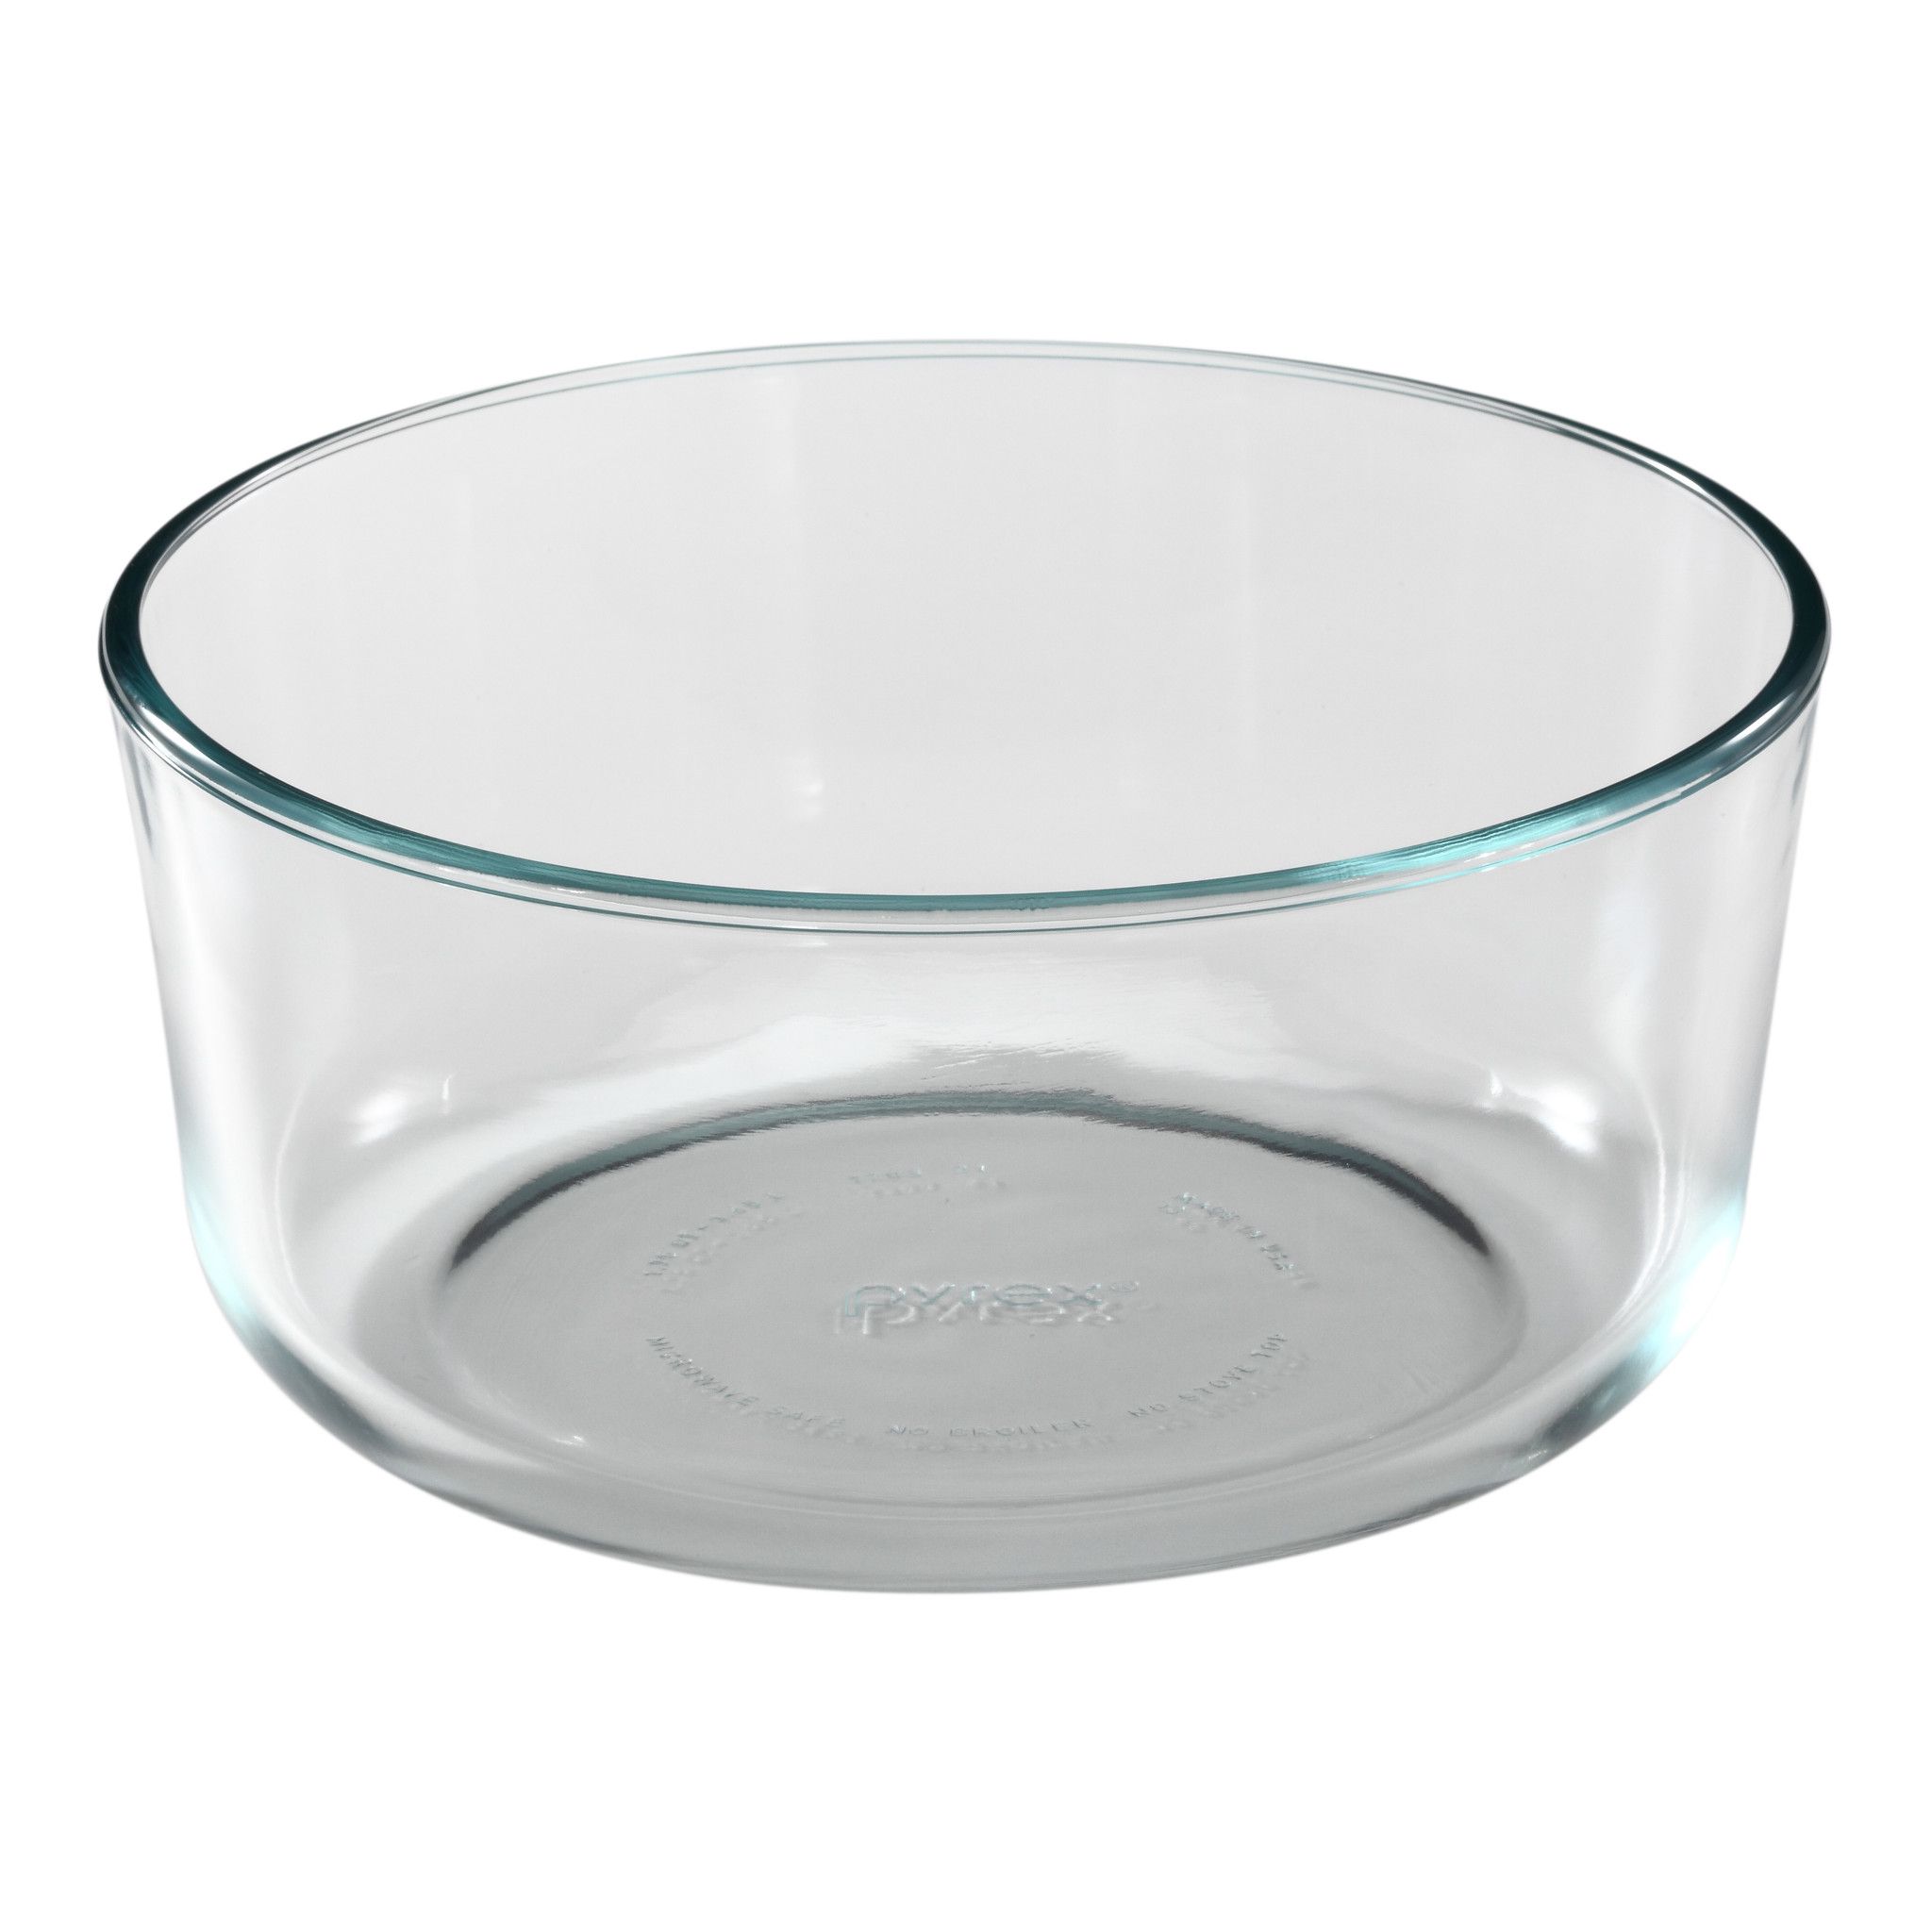 Dicteren ik ben ziek Stal 7-cup Glass Food Storage Container | Pyrex